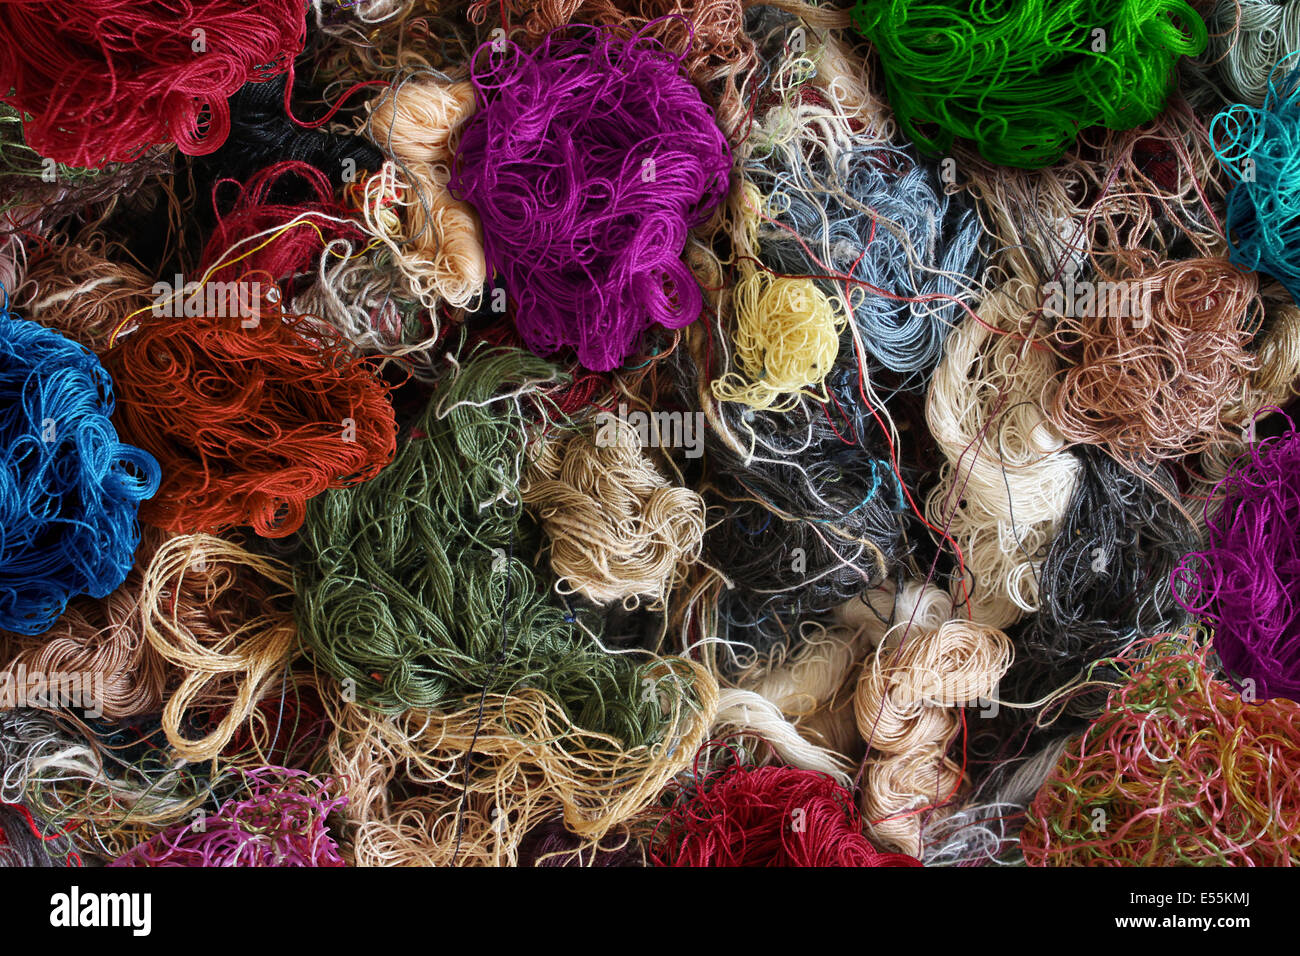 Contexte de l'industrie textile en tant que groupe de fils à coudre de couleur pris comme symbole de l'industrie de la mode et de vêtements ou la fabrication de vêtements comme un tas de fibres. Banque D'Images